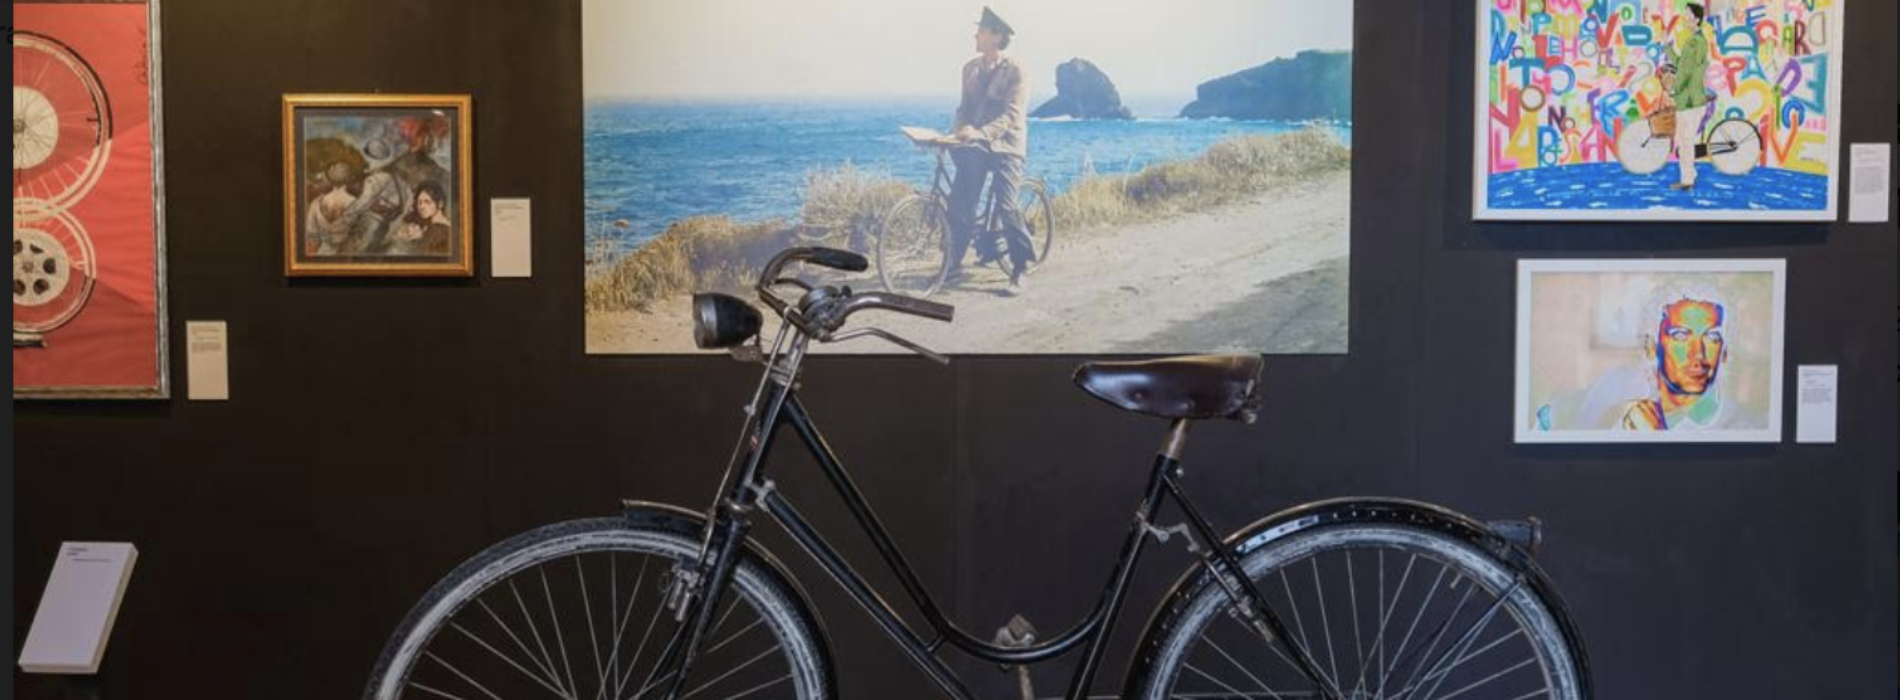 La bicicletta de Il Postino ritorna a Procida, aperta la mostra